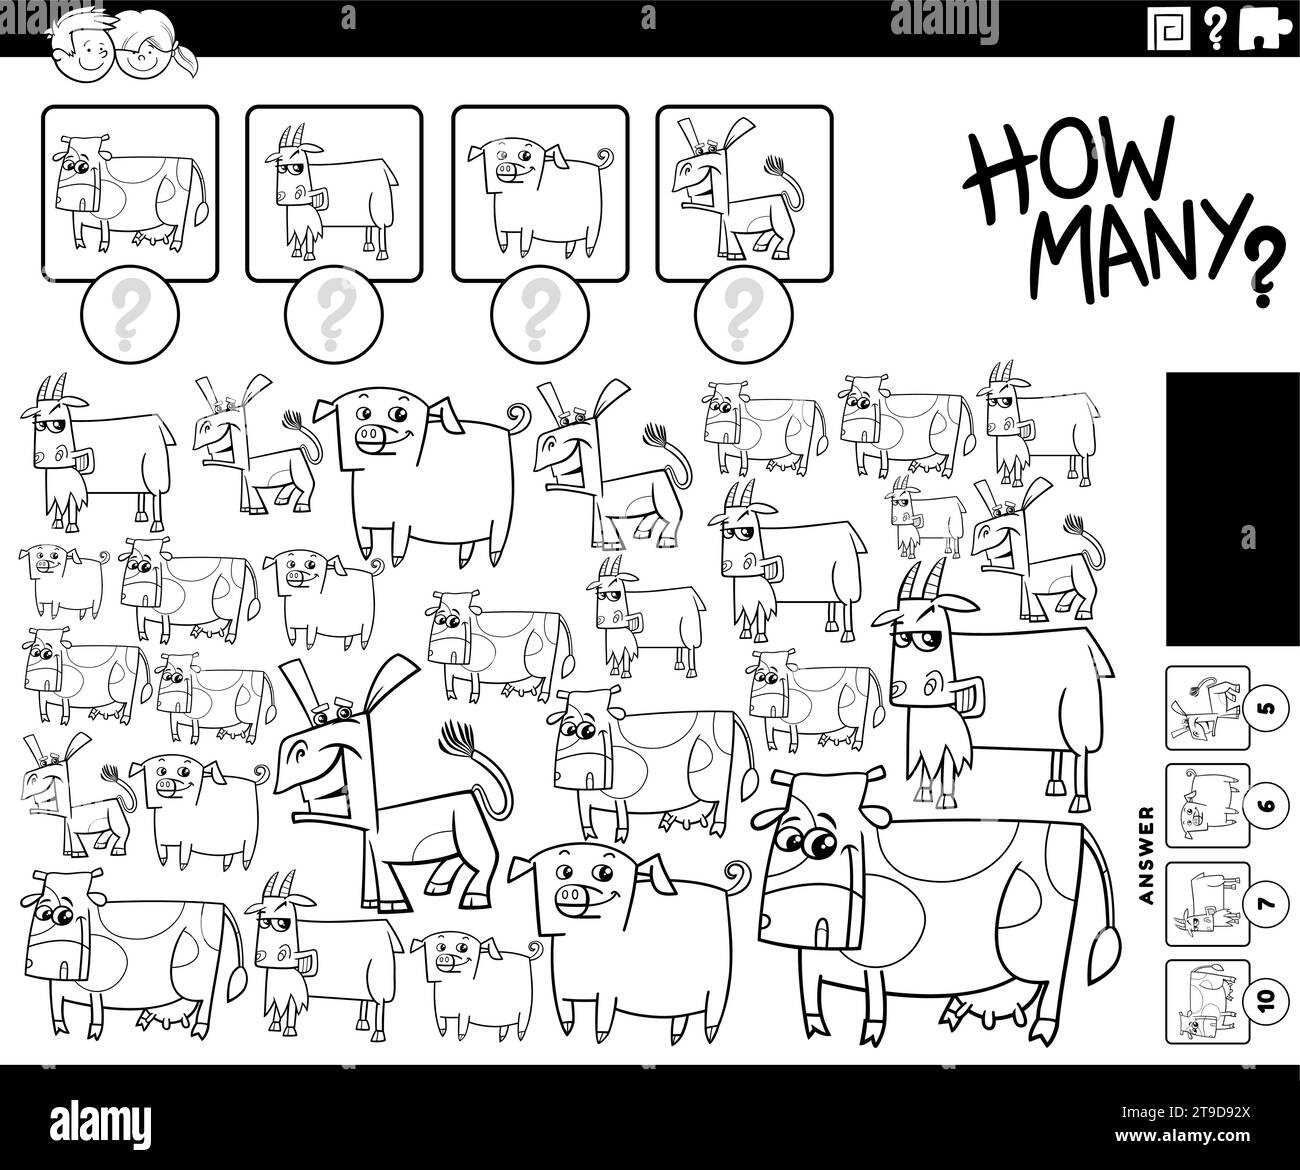 Illustration en noir et blanc de l'activité éducative de comptage avec la page à colorier des personnages d'animaux de ferme de dessin animé Illustration de Vecteur